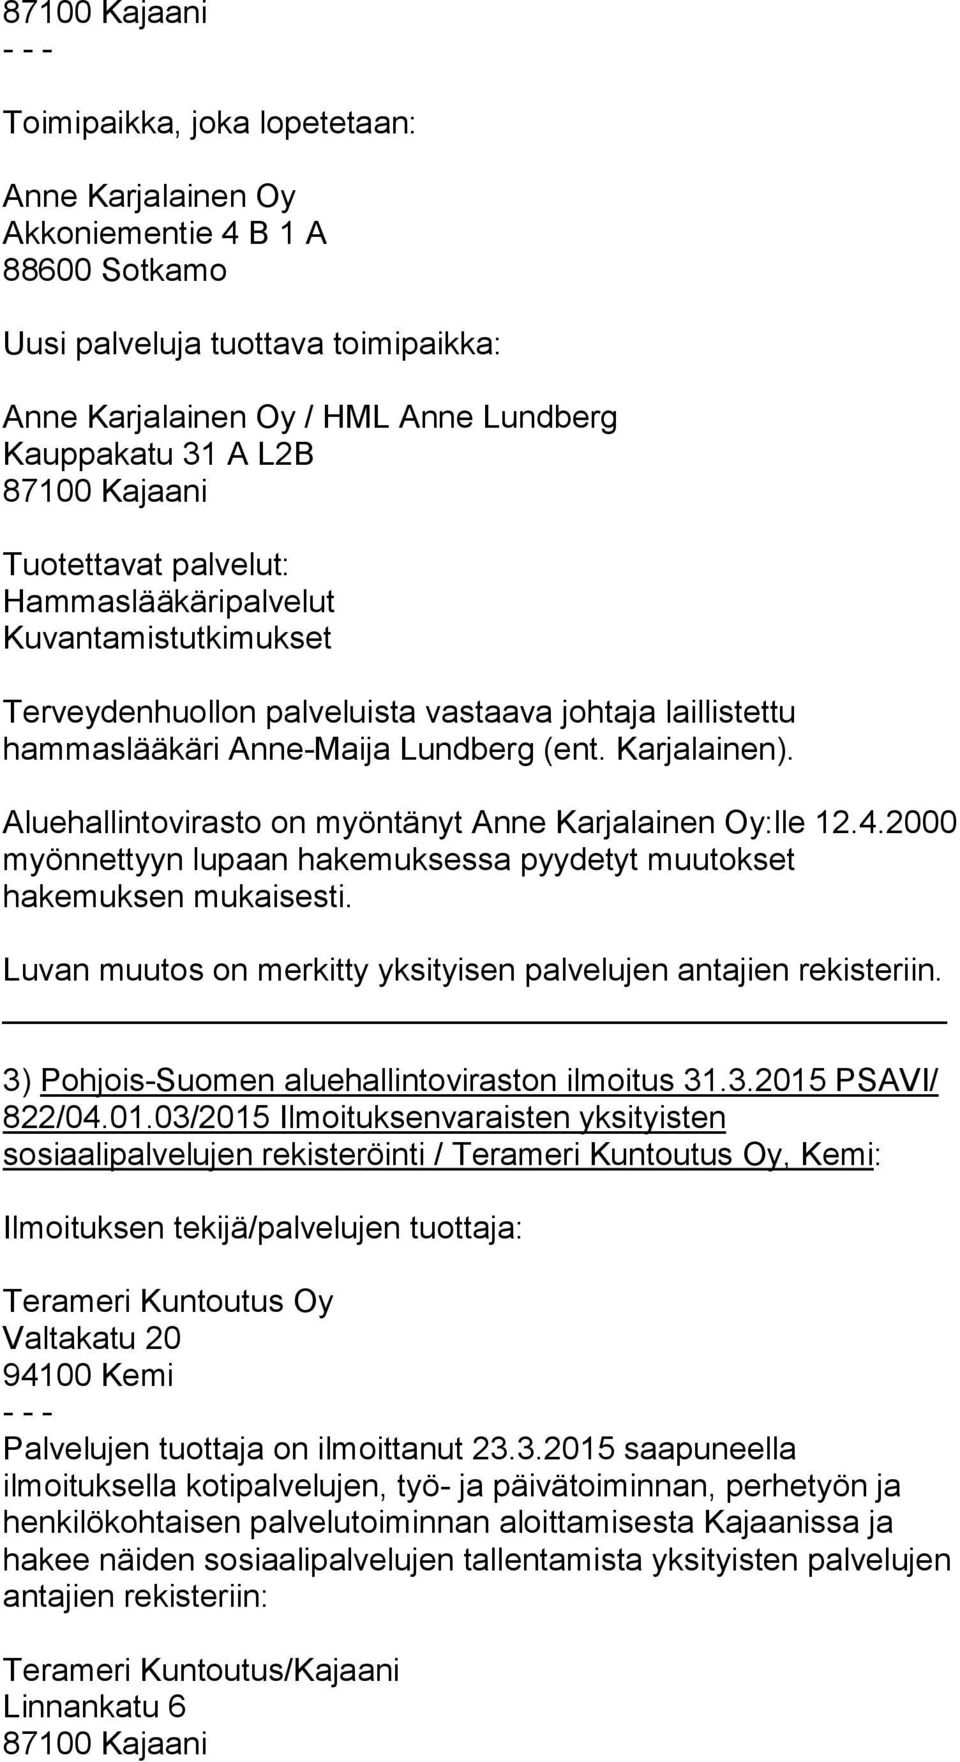 Aluehallintovirasto on myöntänyt Anne Karjalainen Oy:lle 12.4.2000 myönnettyyn lupaan hakemuksessa pyydetyt muutokset hakemuksen mukaisesti.